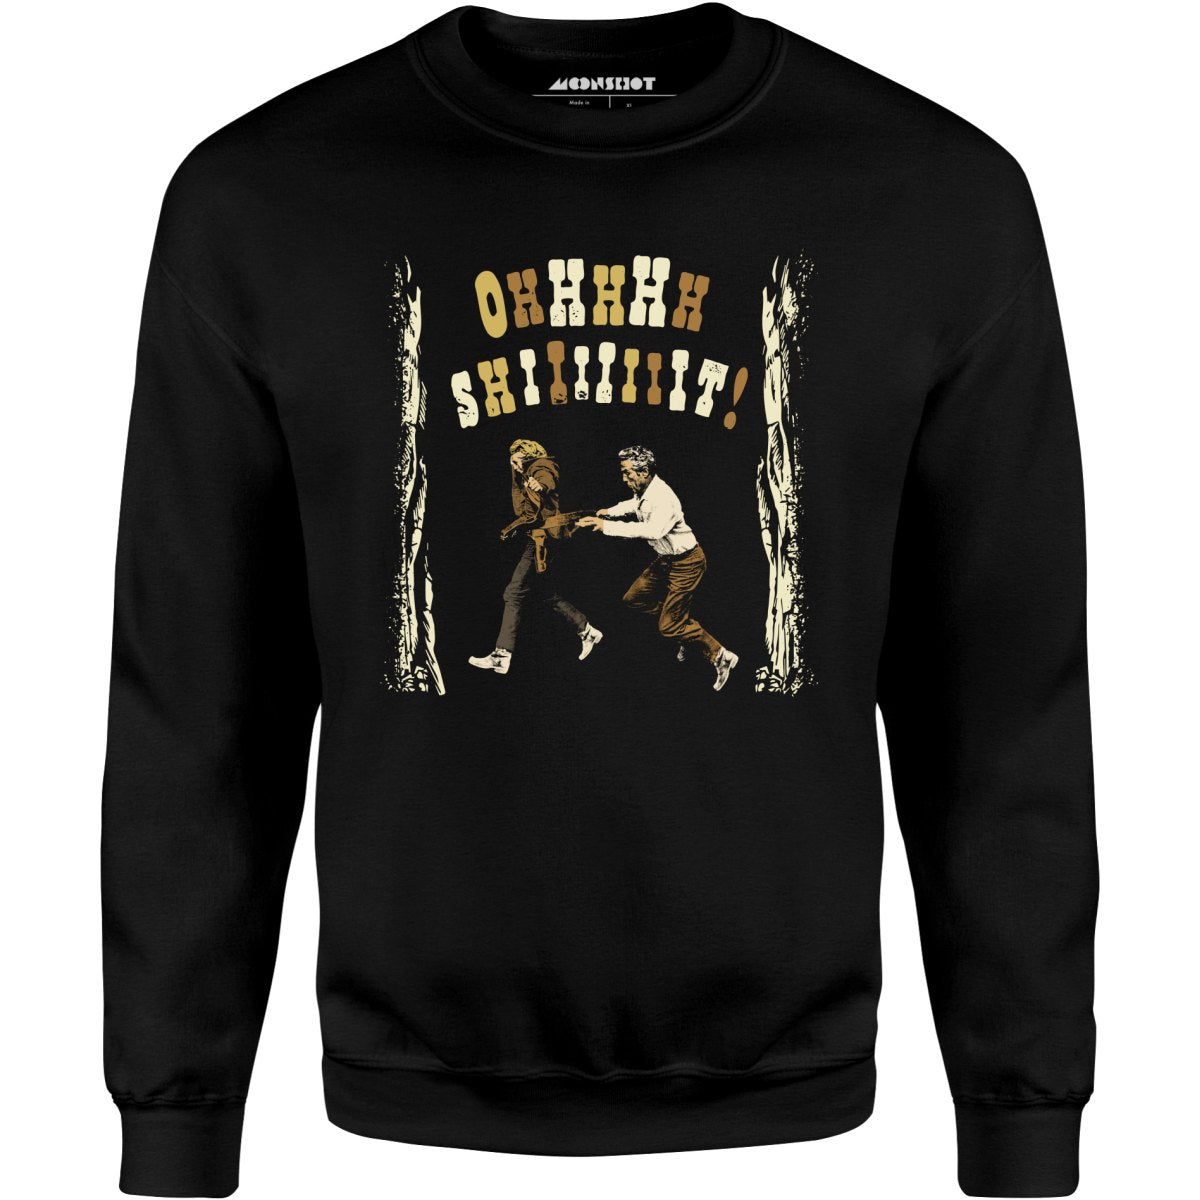 Ohhhhh Shiiiiiiit - Butch Cassidy & The Sundance Kid - Unisex Sweatshirt